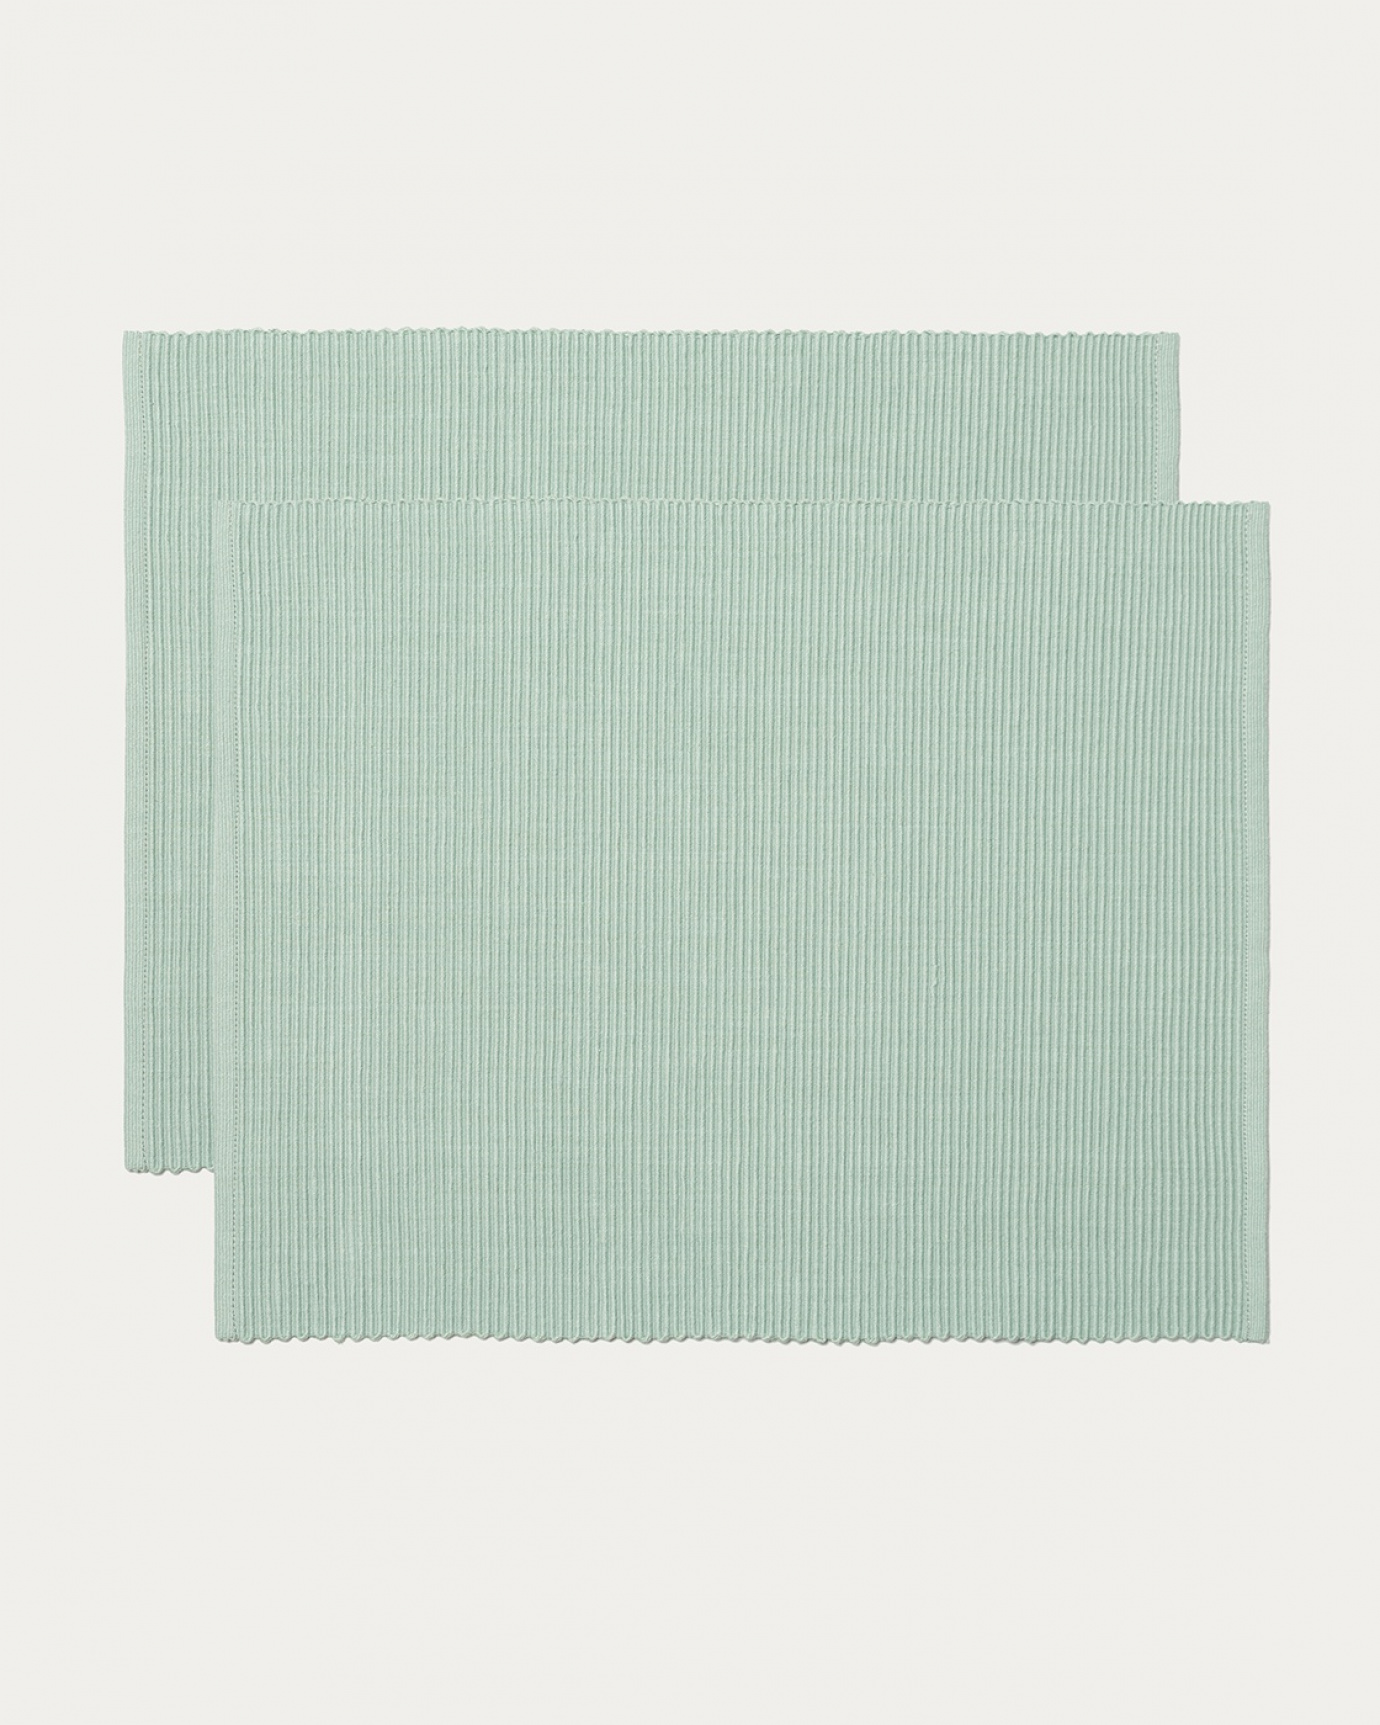 Immagine prodotto verde ghiaccio chiaro tovaglietta UNI in morbido cotone a costine di qualità di LINUM DESIGN. Dimensioni 35x46 cm e venduto in 2-pezzi.